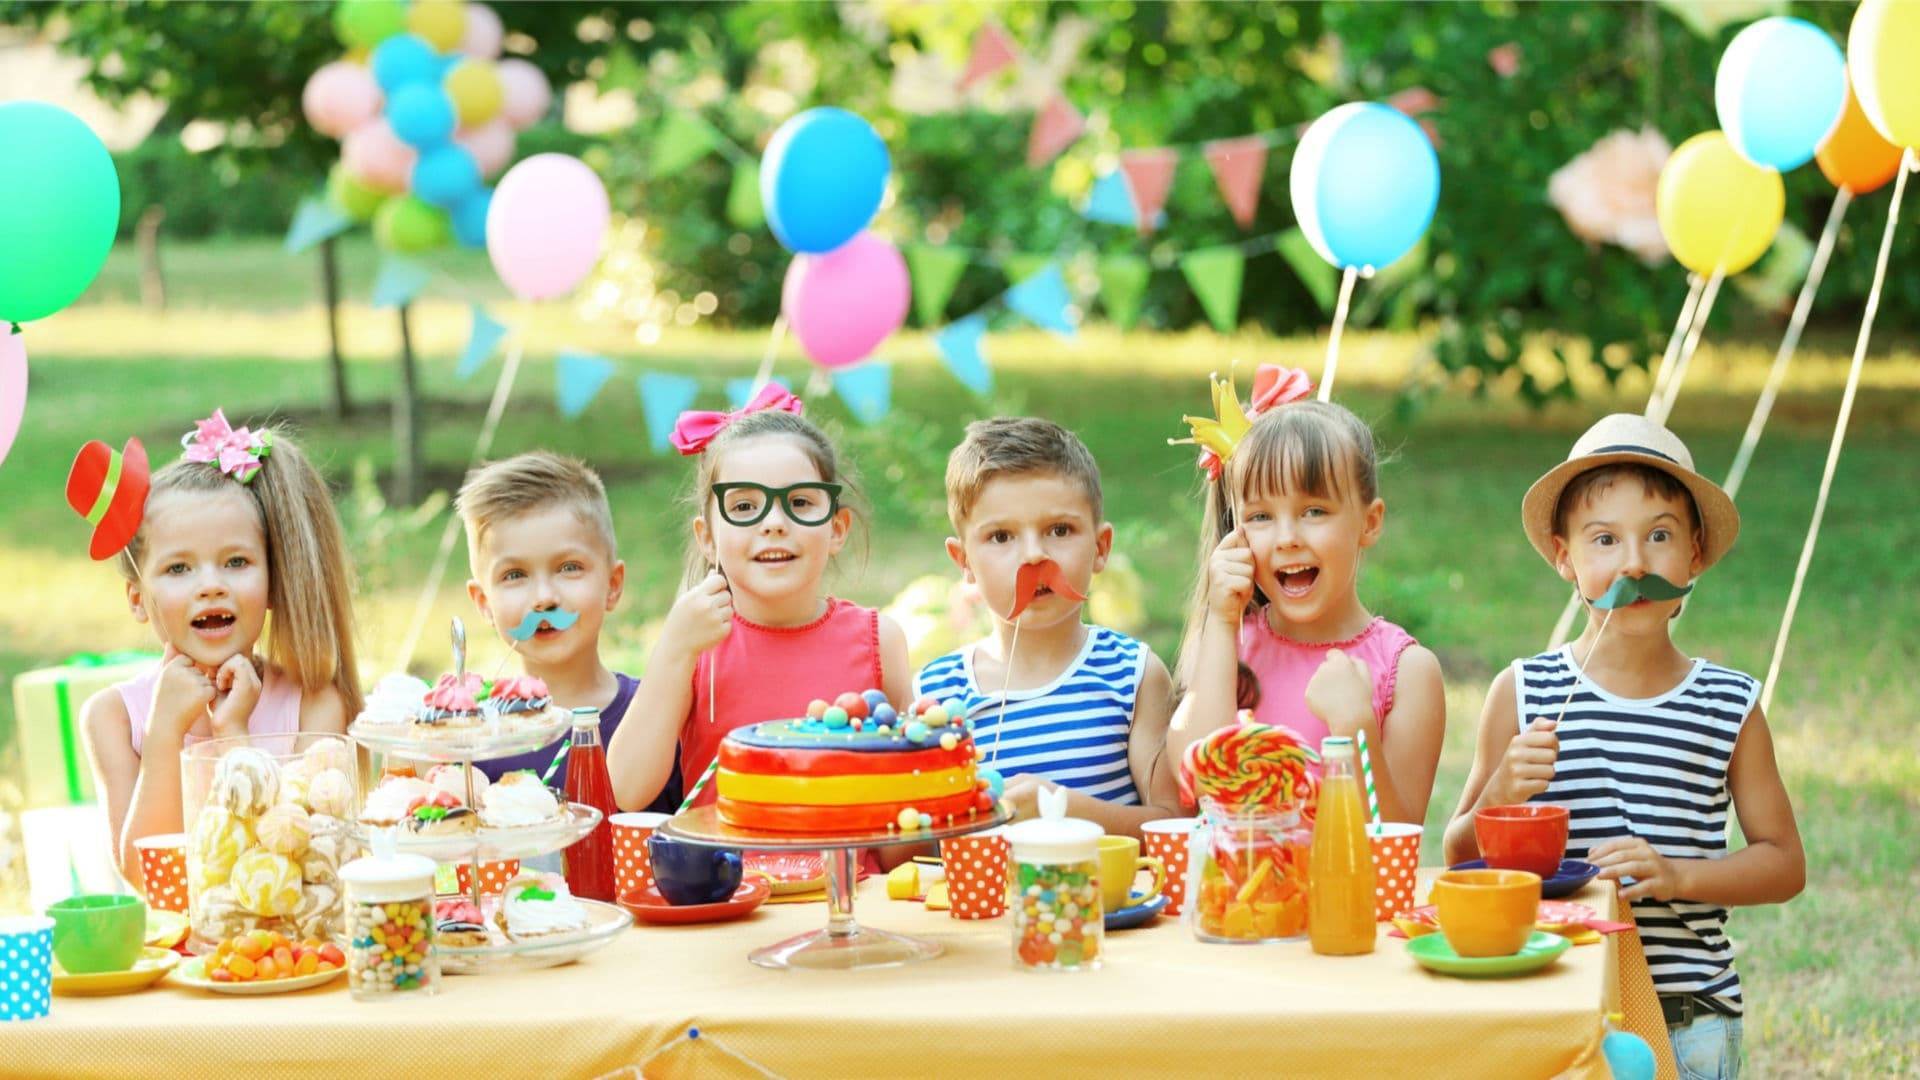 Как развлечь гостей на детском празднике?